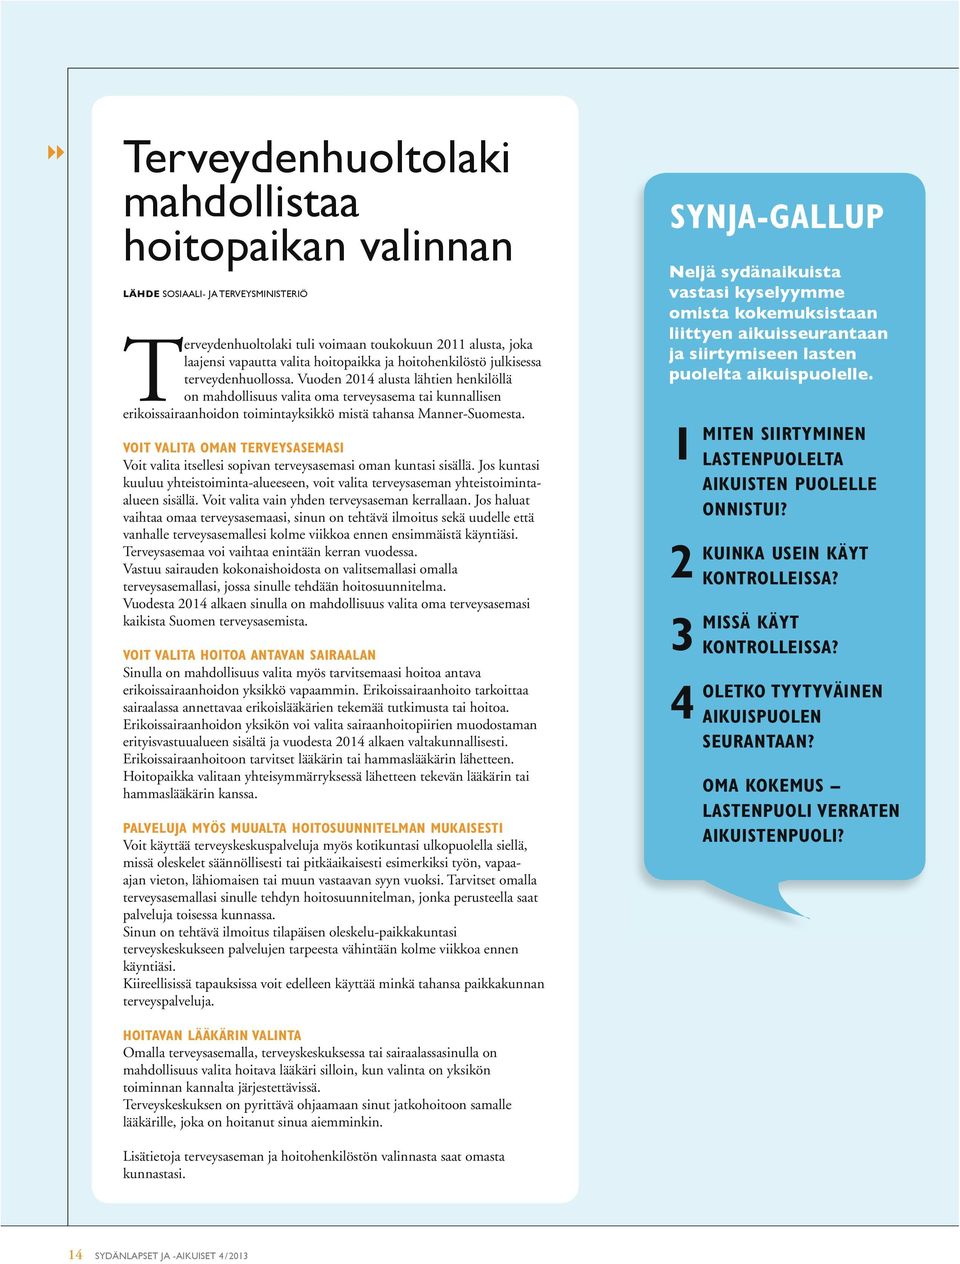 Vuoden 2014 alusta lähtien henkilöllä on mahdollisuus valita oma terveysasema tai kunnallisen erikoissairaanhoidon toimintayksikkö mistä tahansa Manner-Suomesta.